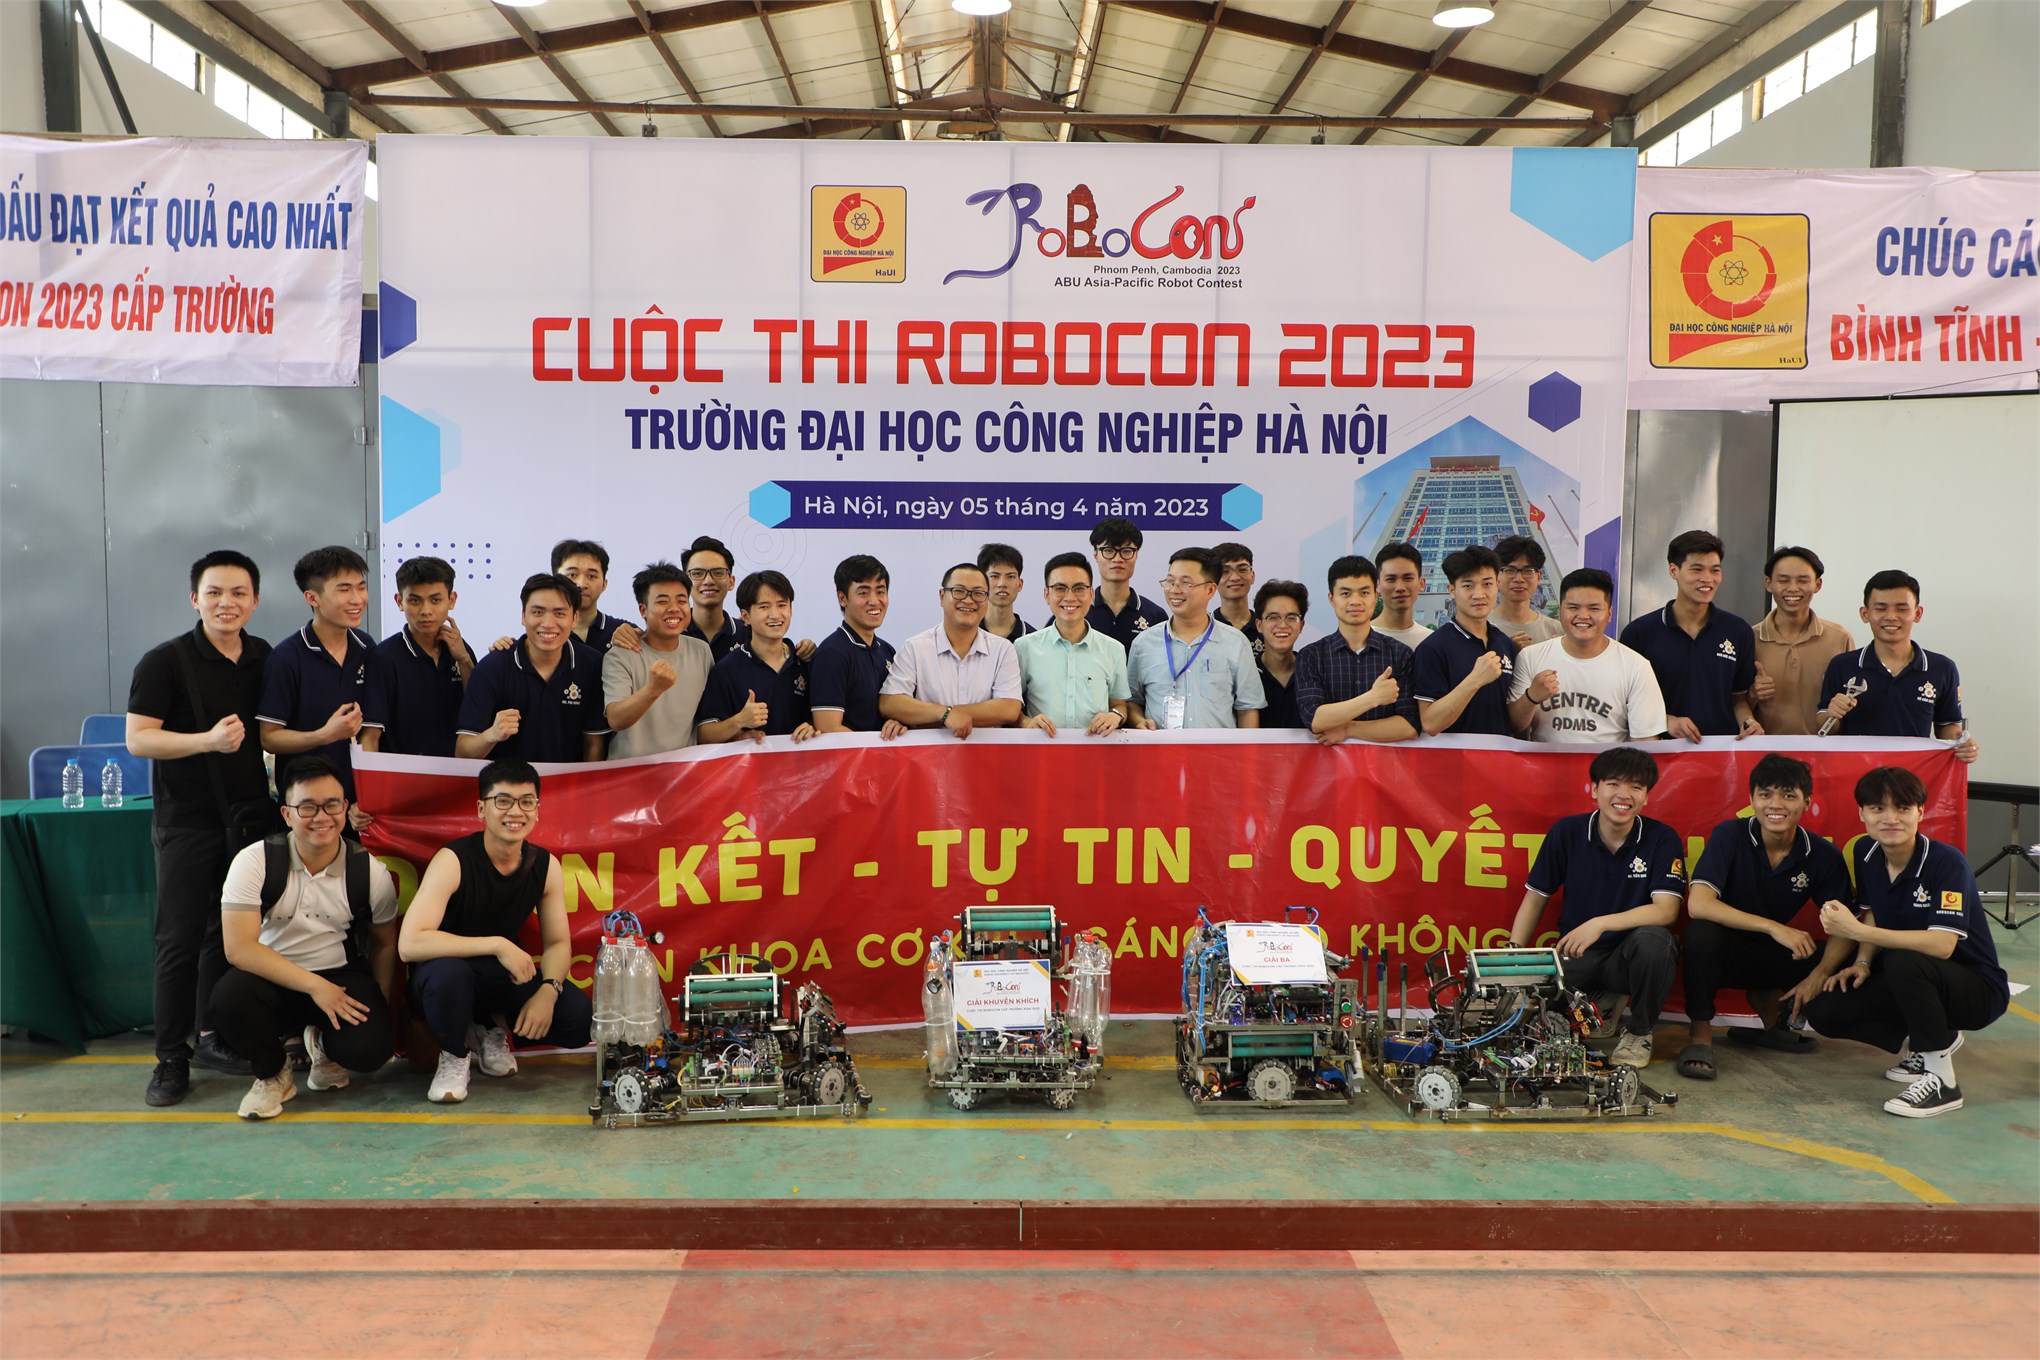 ĐT2-HaUI đạt giải Nhất cuộc thi robocon cấp Trường năm 2023